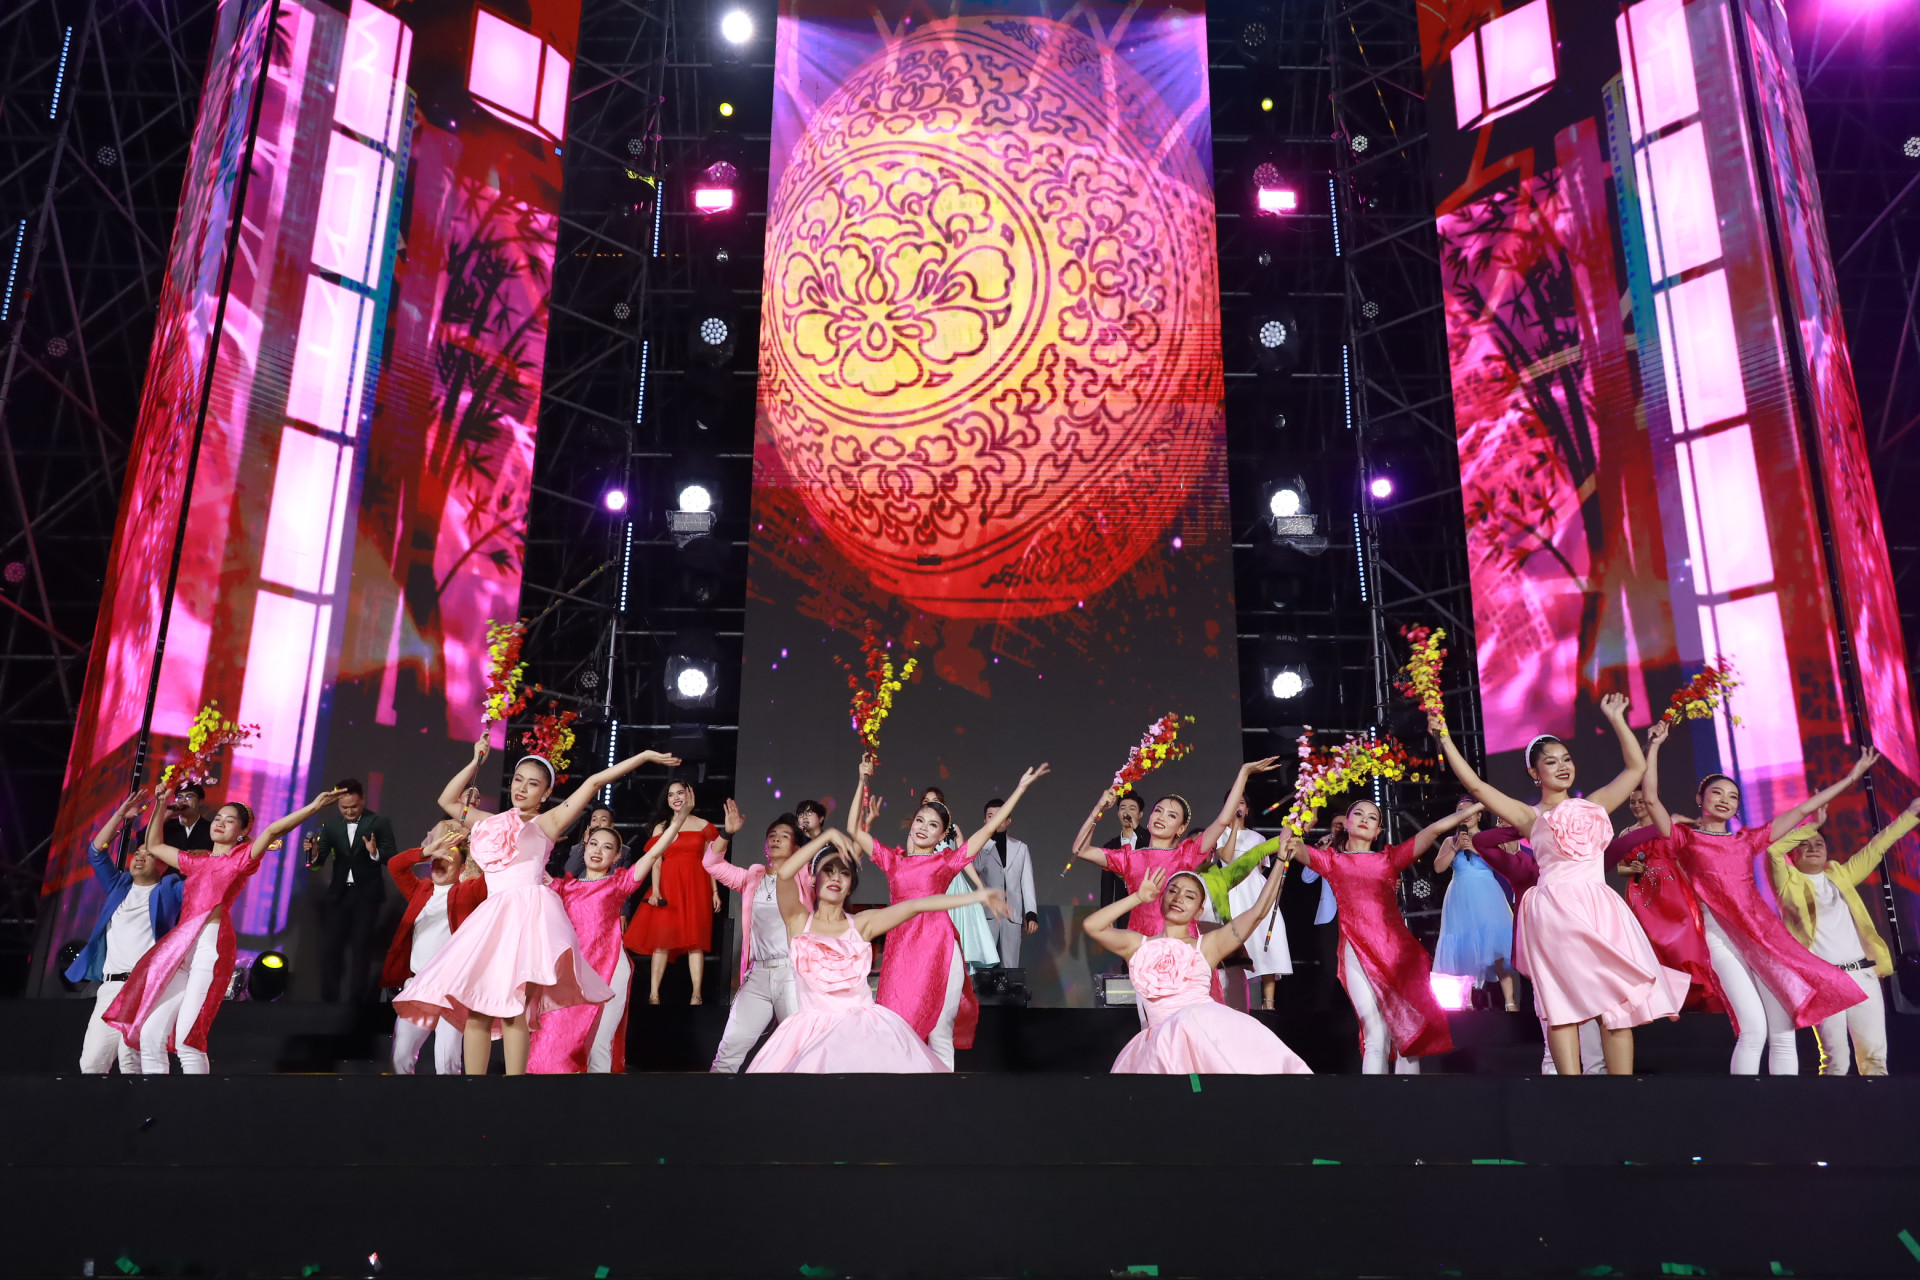 Liên khúc Nụ cười xuân - Ước nguyên đầu xuân do toàn đoàn Ca múa nhạc Hải Đăng biểu diễn đã gửi tới khán giả những thông điệp ý nghĩa trong năm mới 2024.